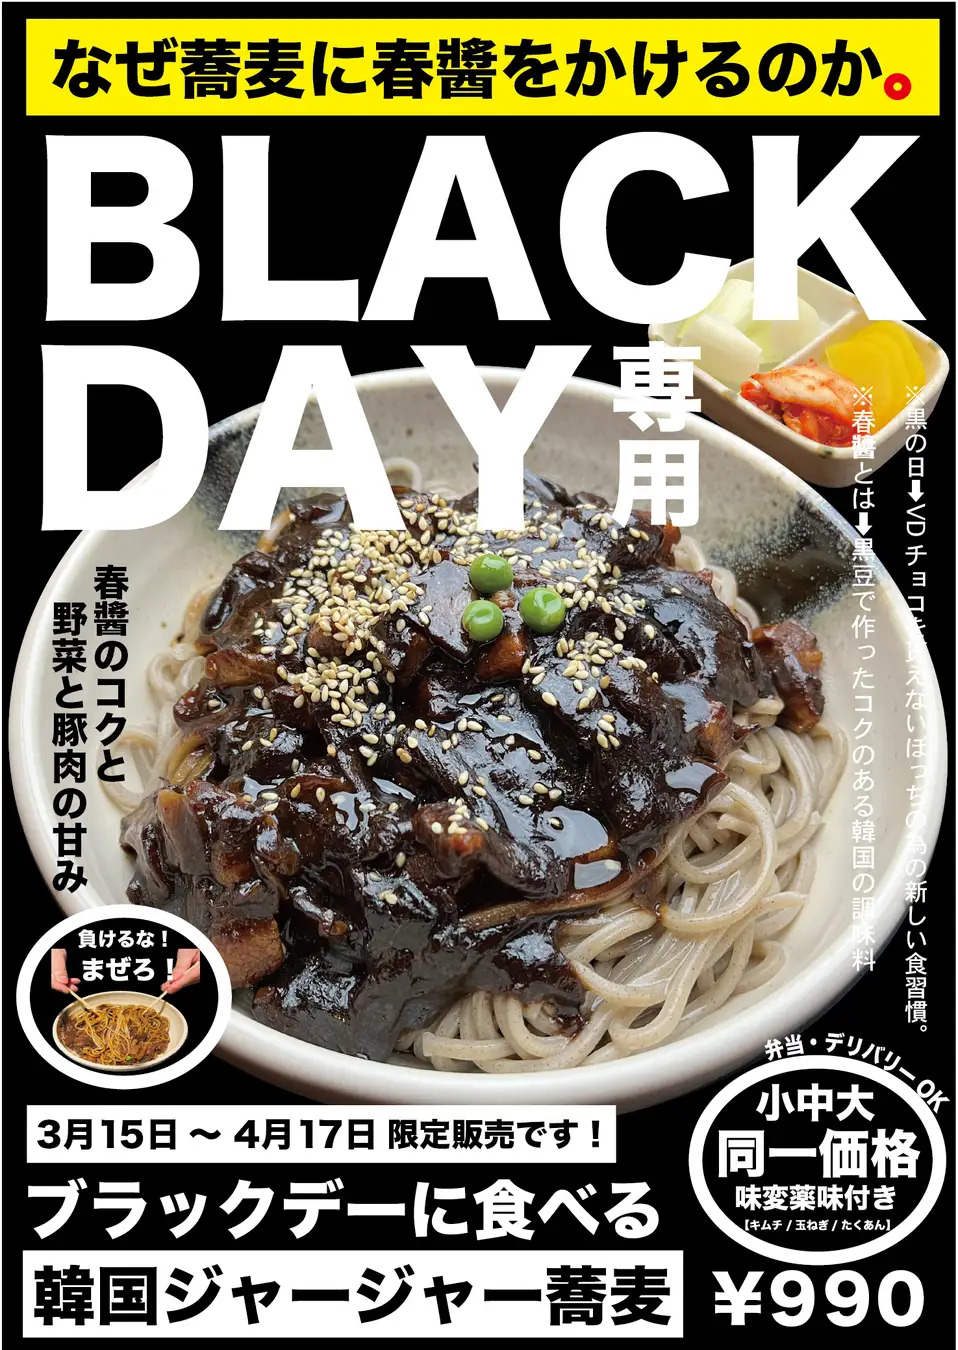 Korean jjajangmyeon noodle Black Day promotion in Japan.